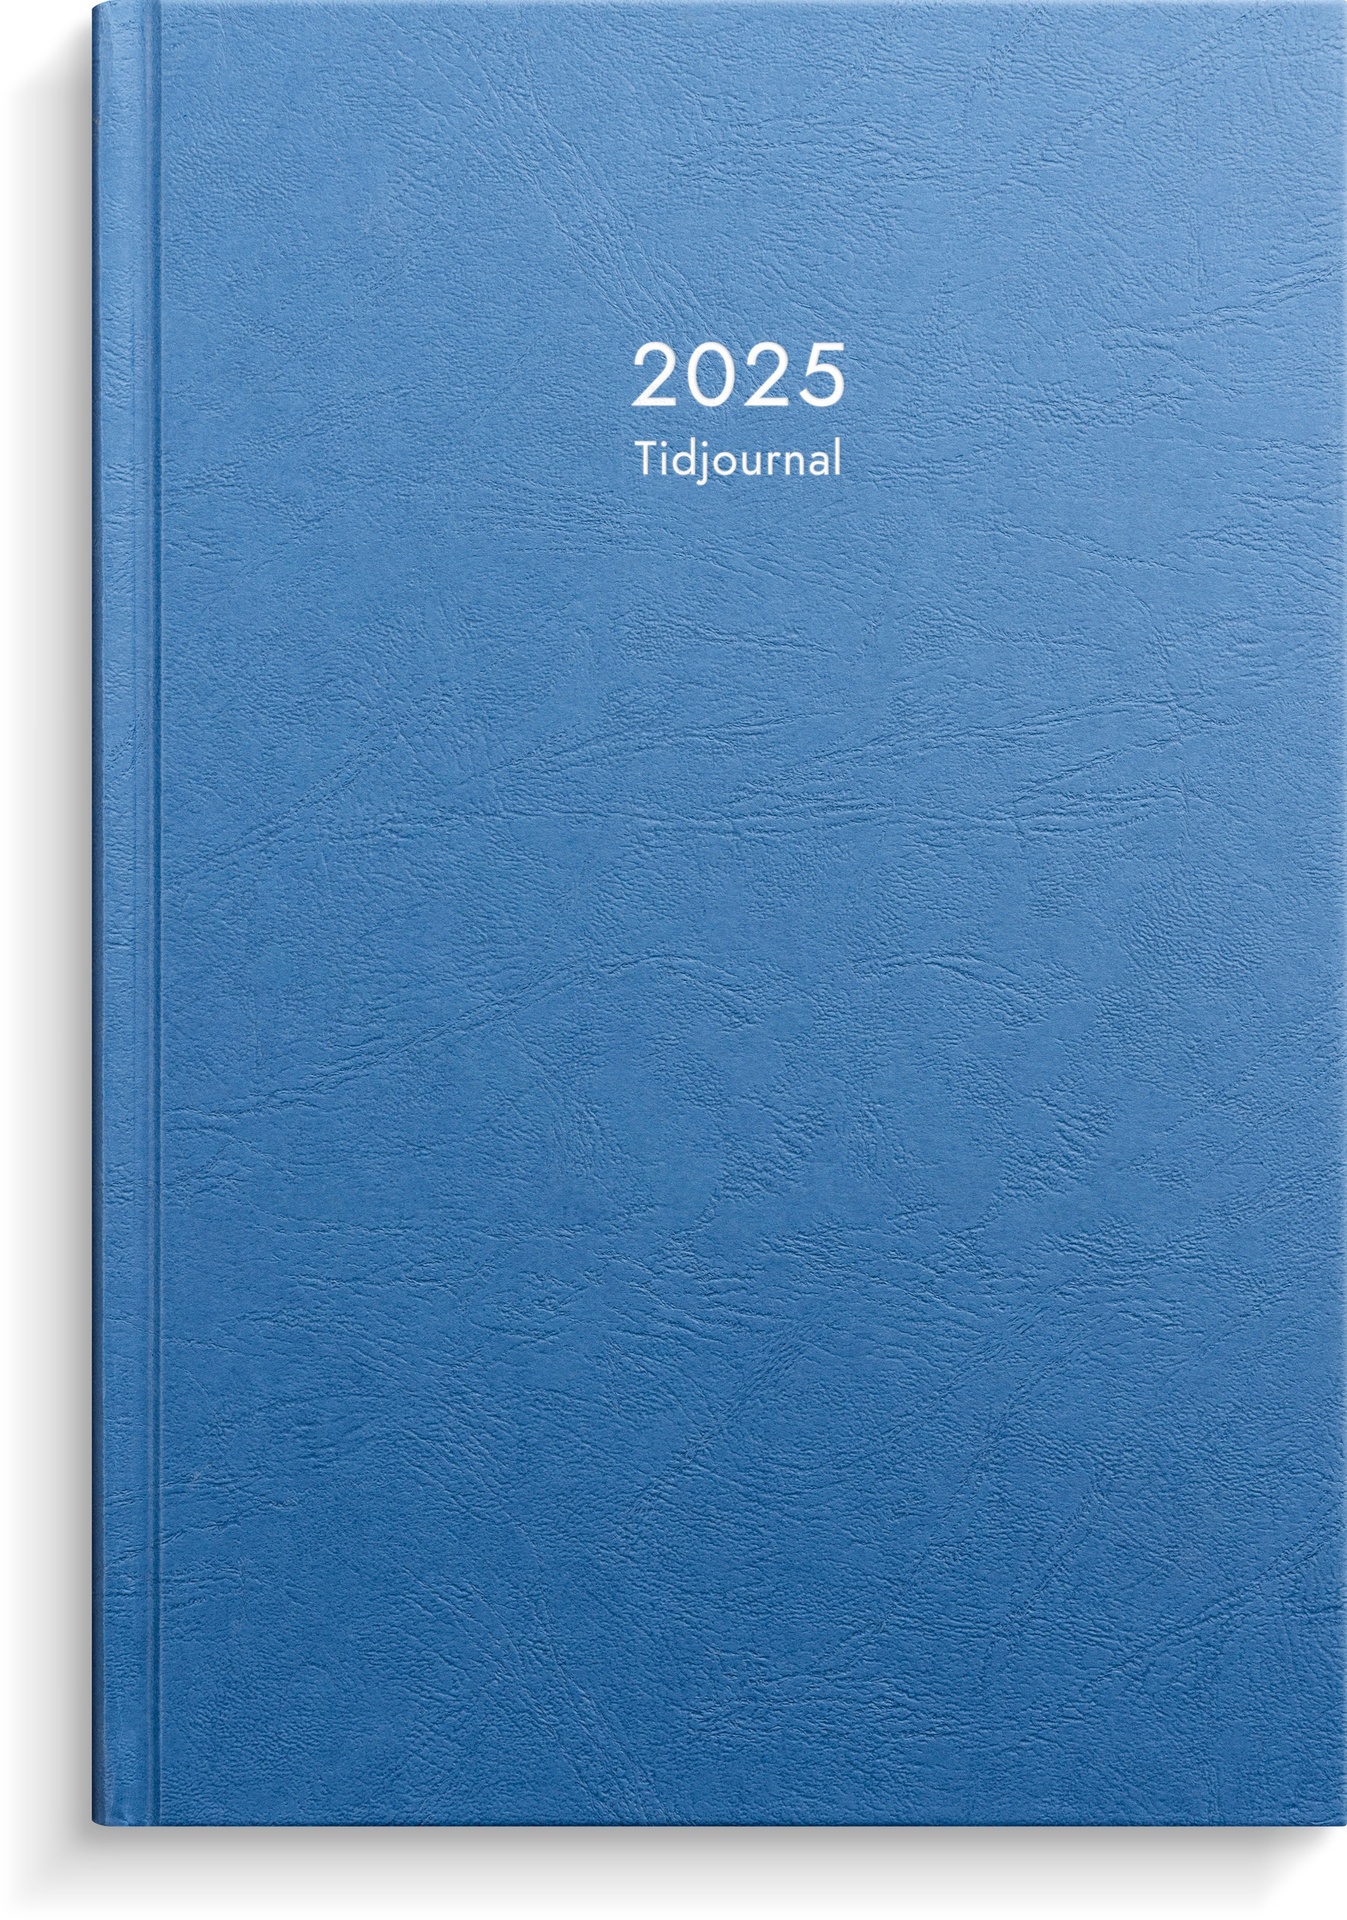 [61100025] Kalender 2025 Tidjournal blå k